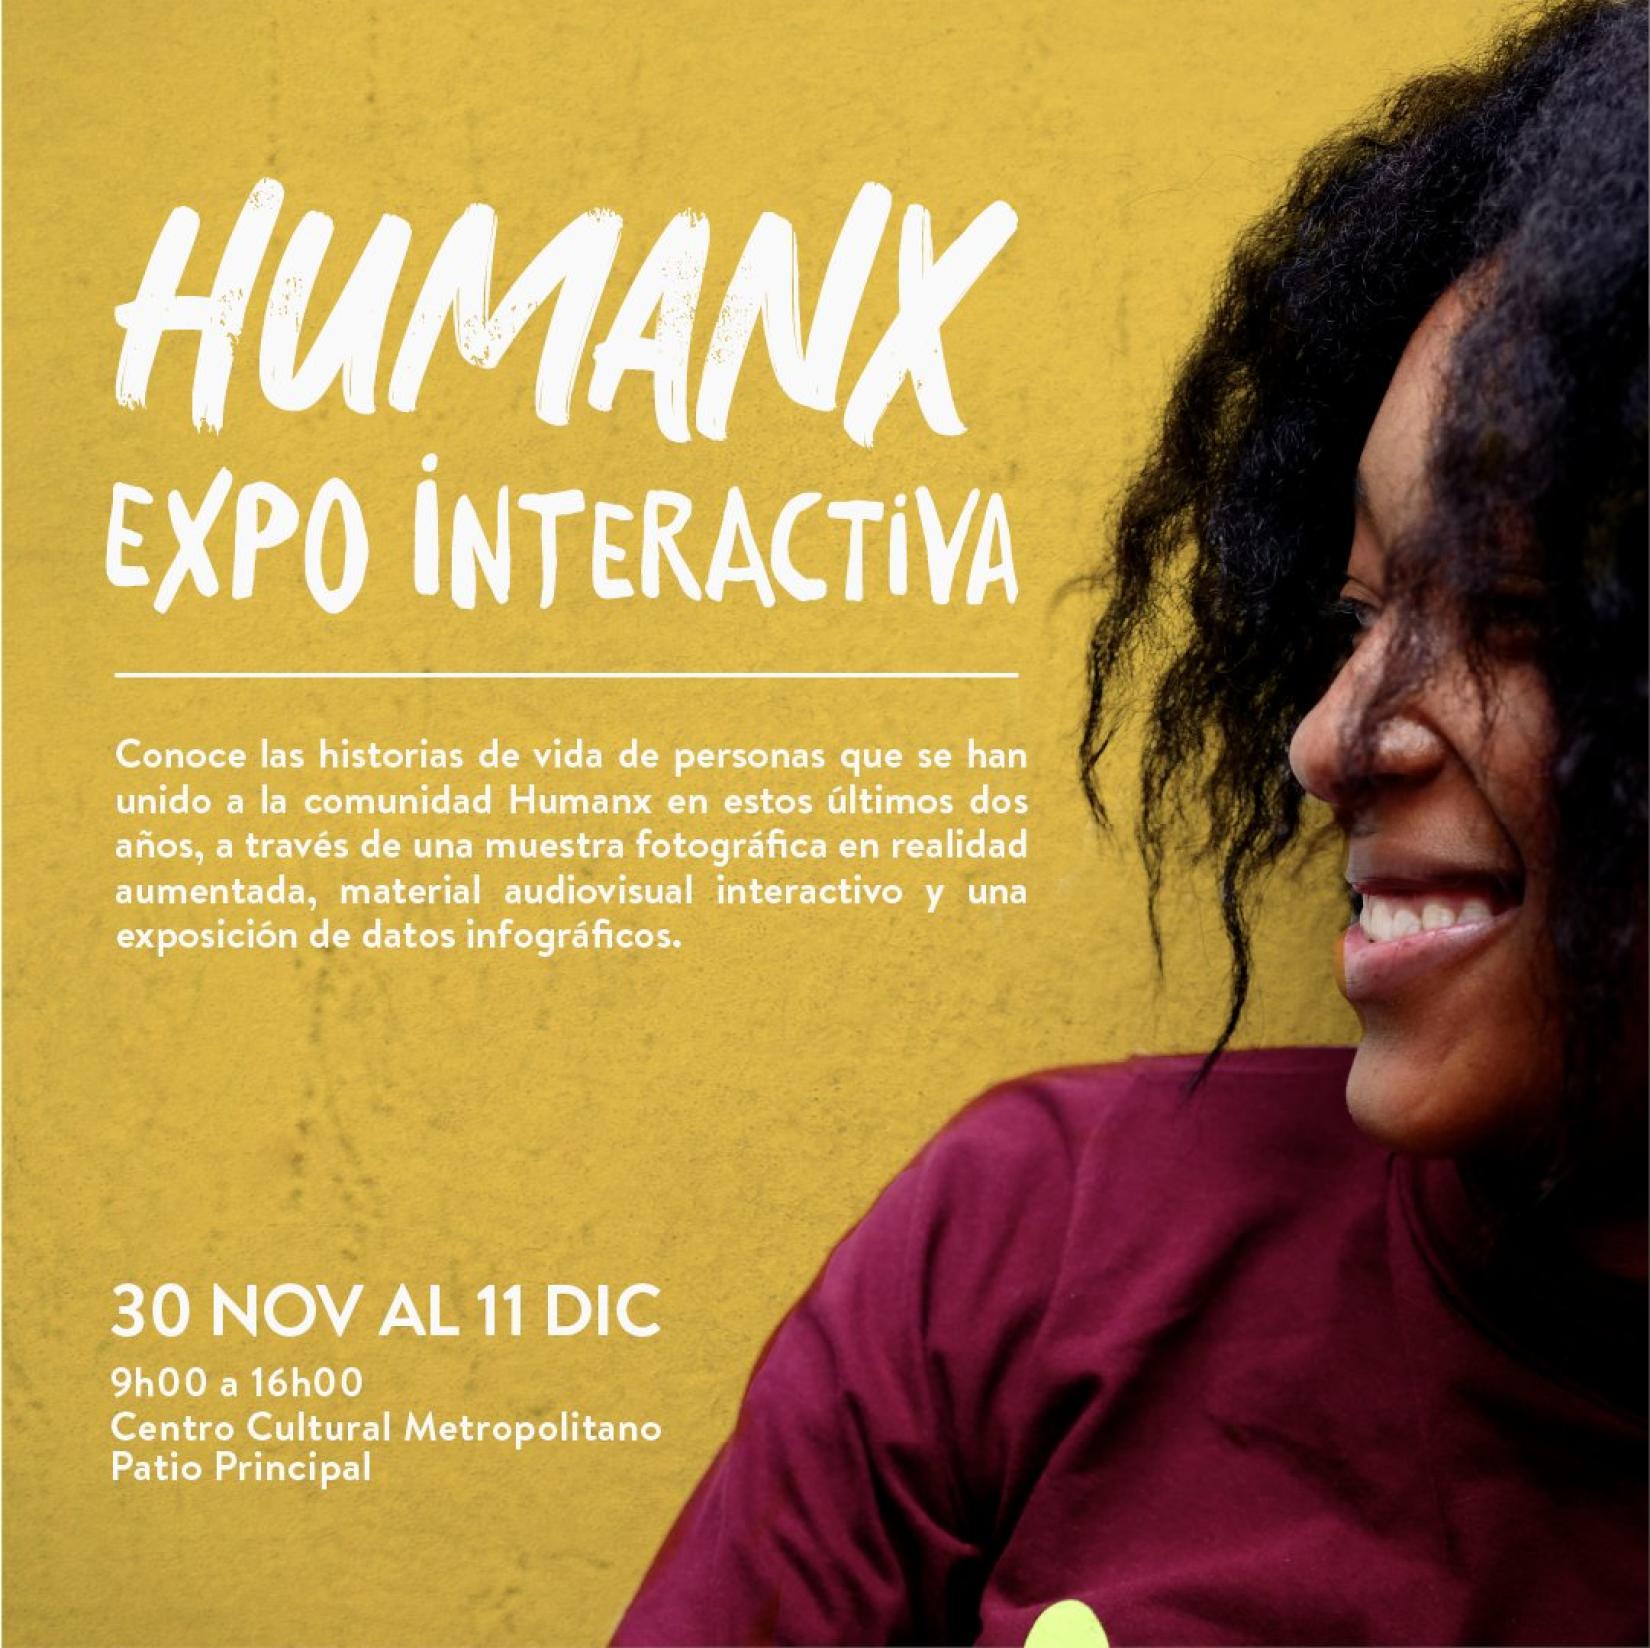 Invitación evento exposición interactiva Humano